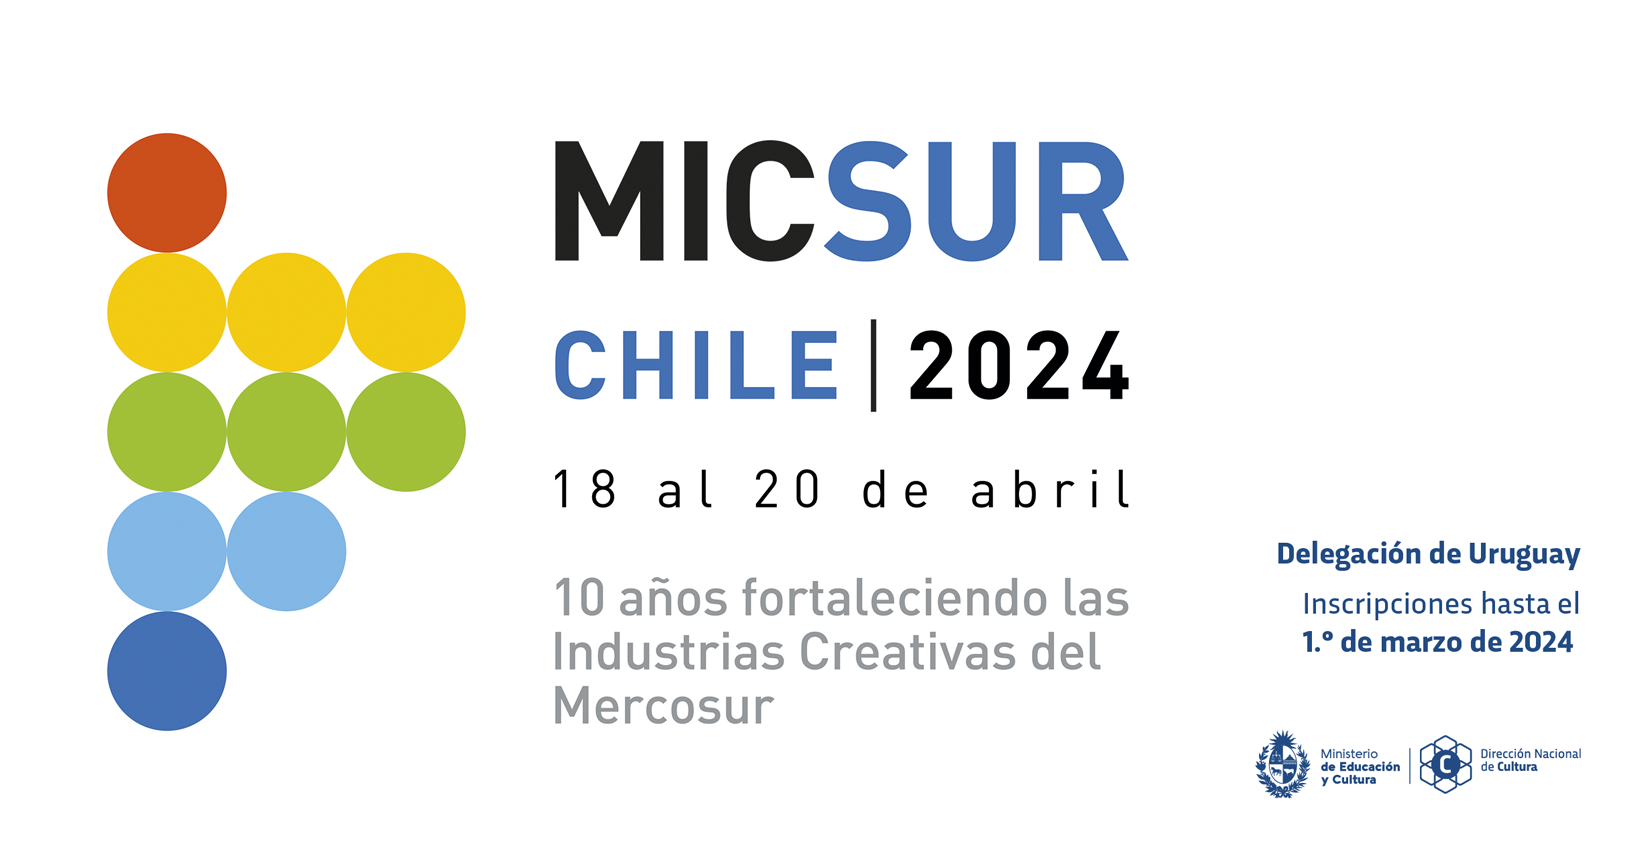 MICSUR CHILE 2024